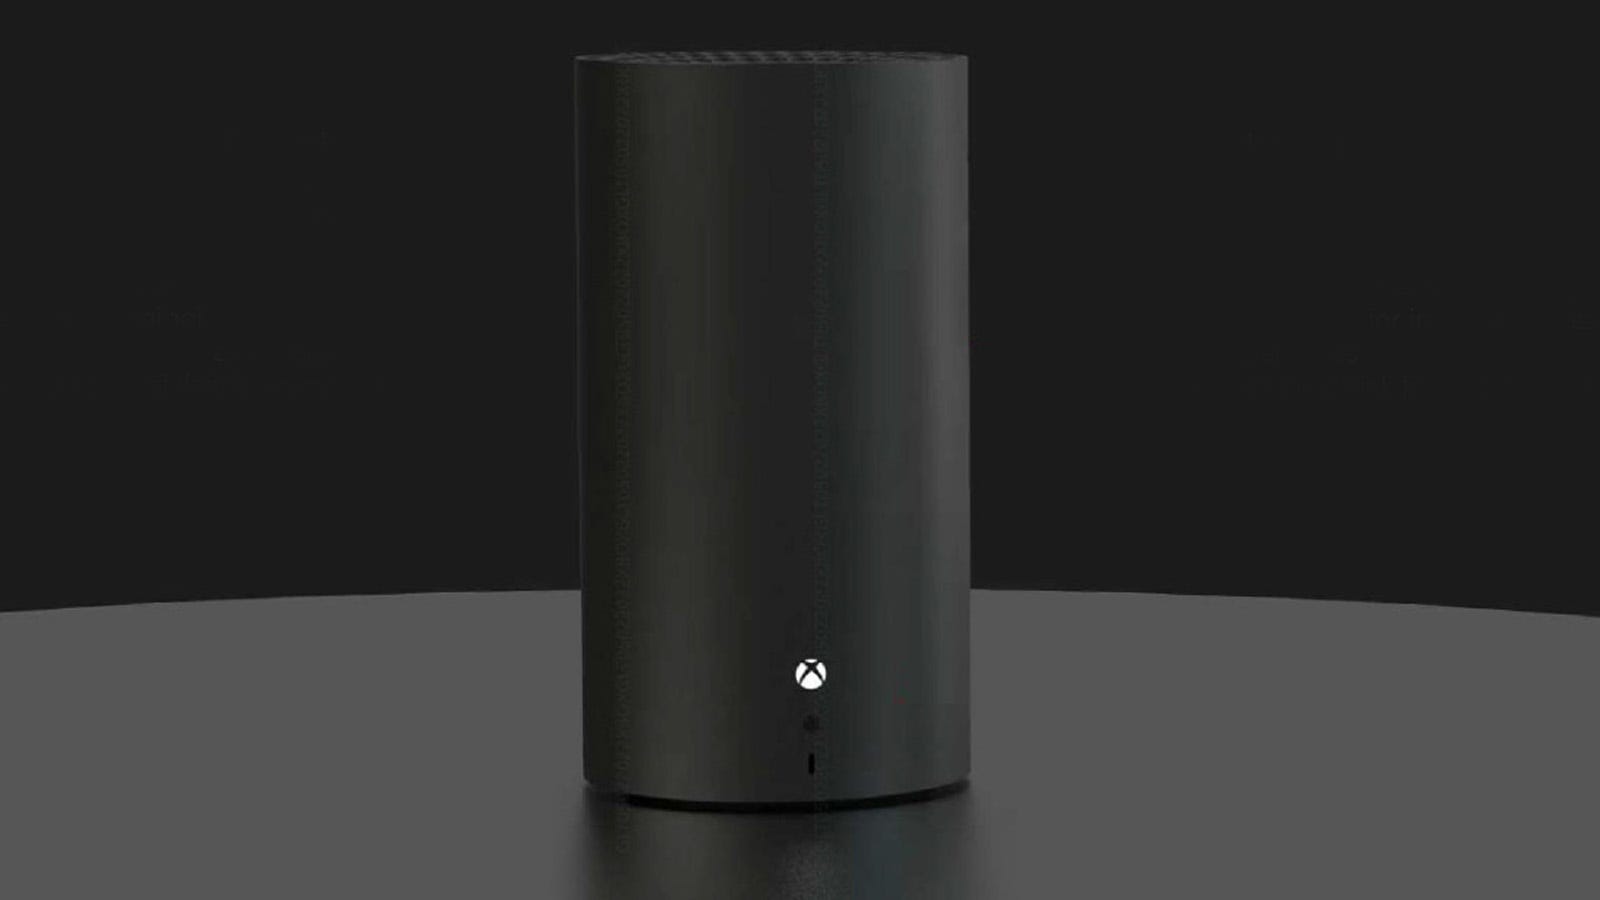 Microsoft-ը կրճատում է Xbox-ի թվային ապագայի հրատապ հարցերը